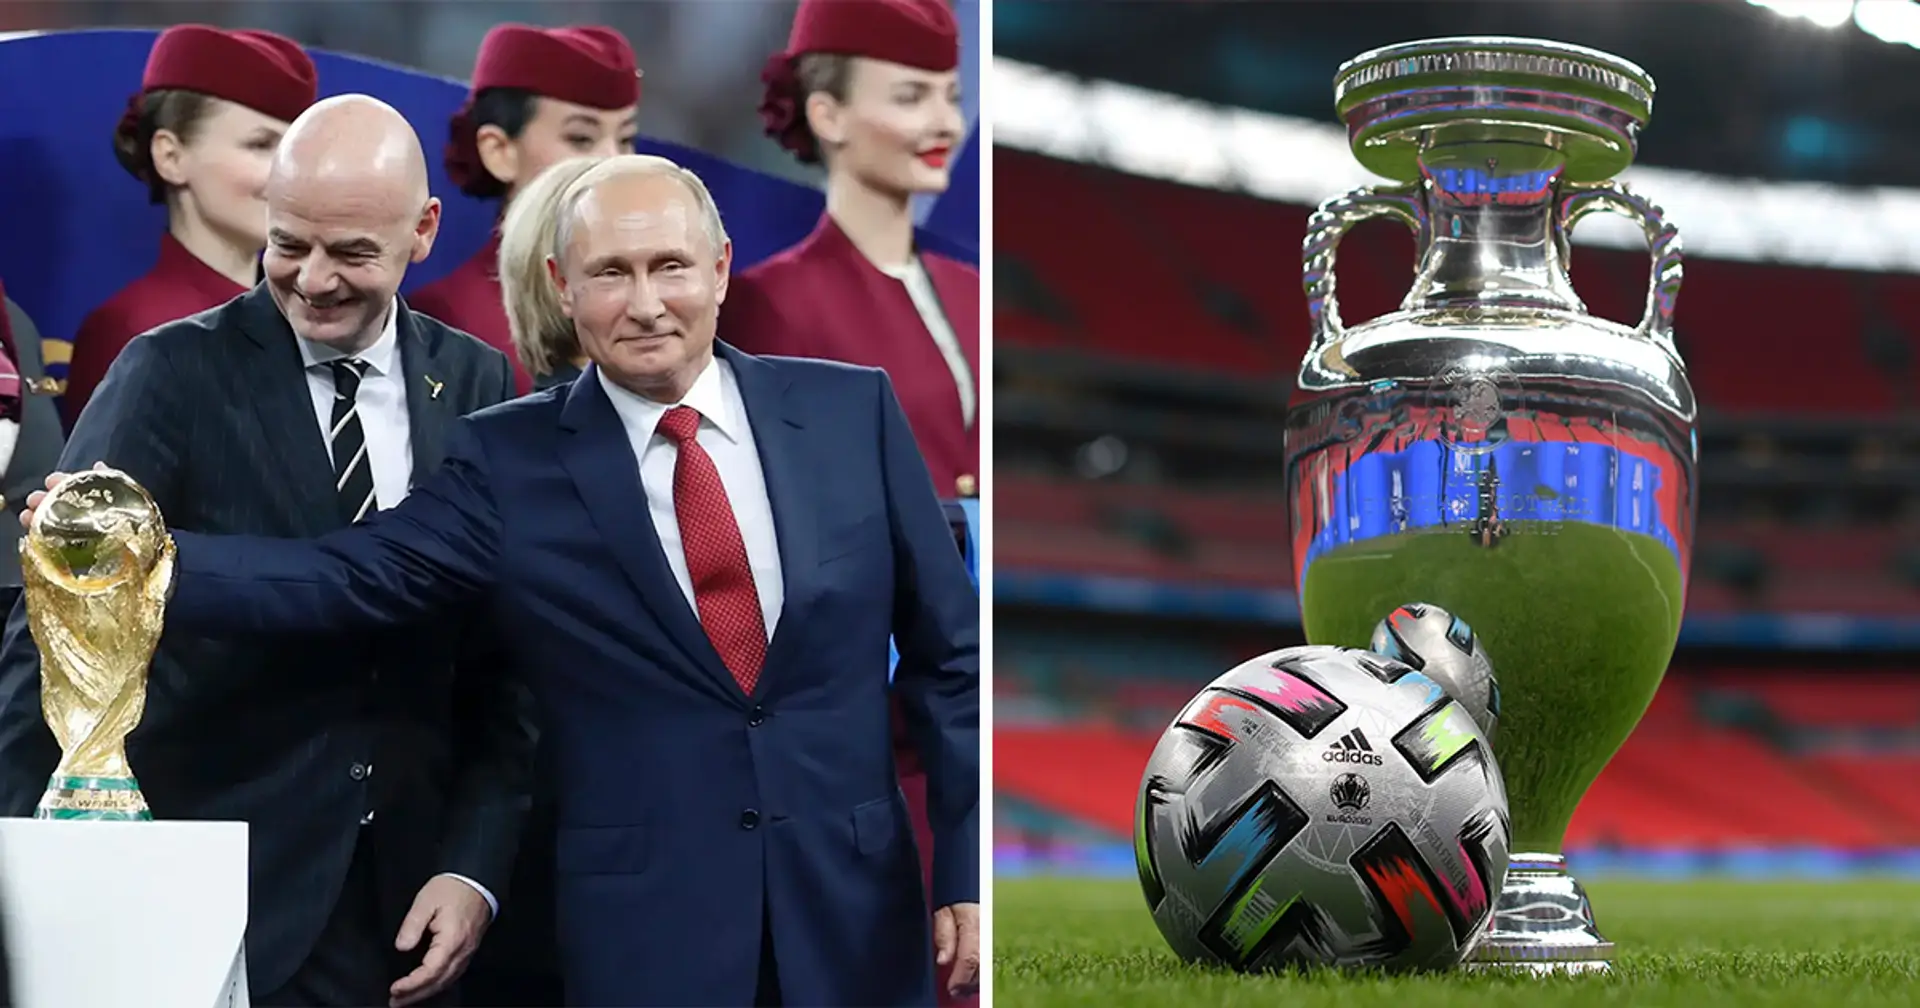 Russland bewirbt sich trotz Suspendierung vom internationalen Fußball um die Ausrichtung der Euro 2028 oder 2032